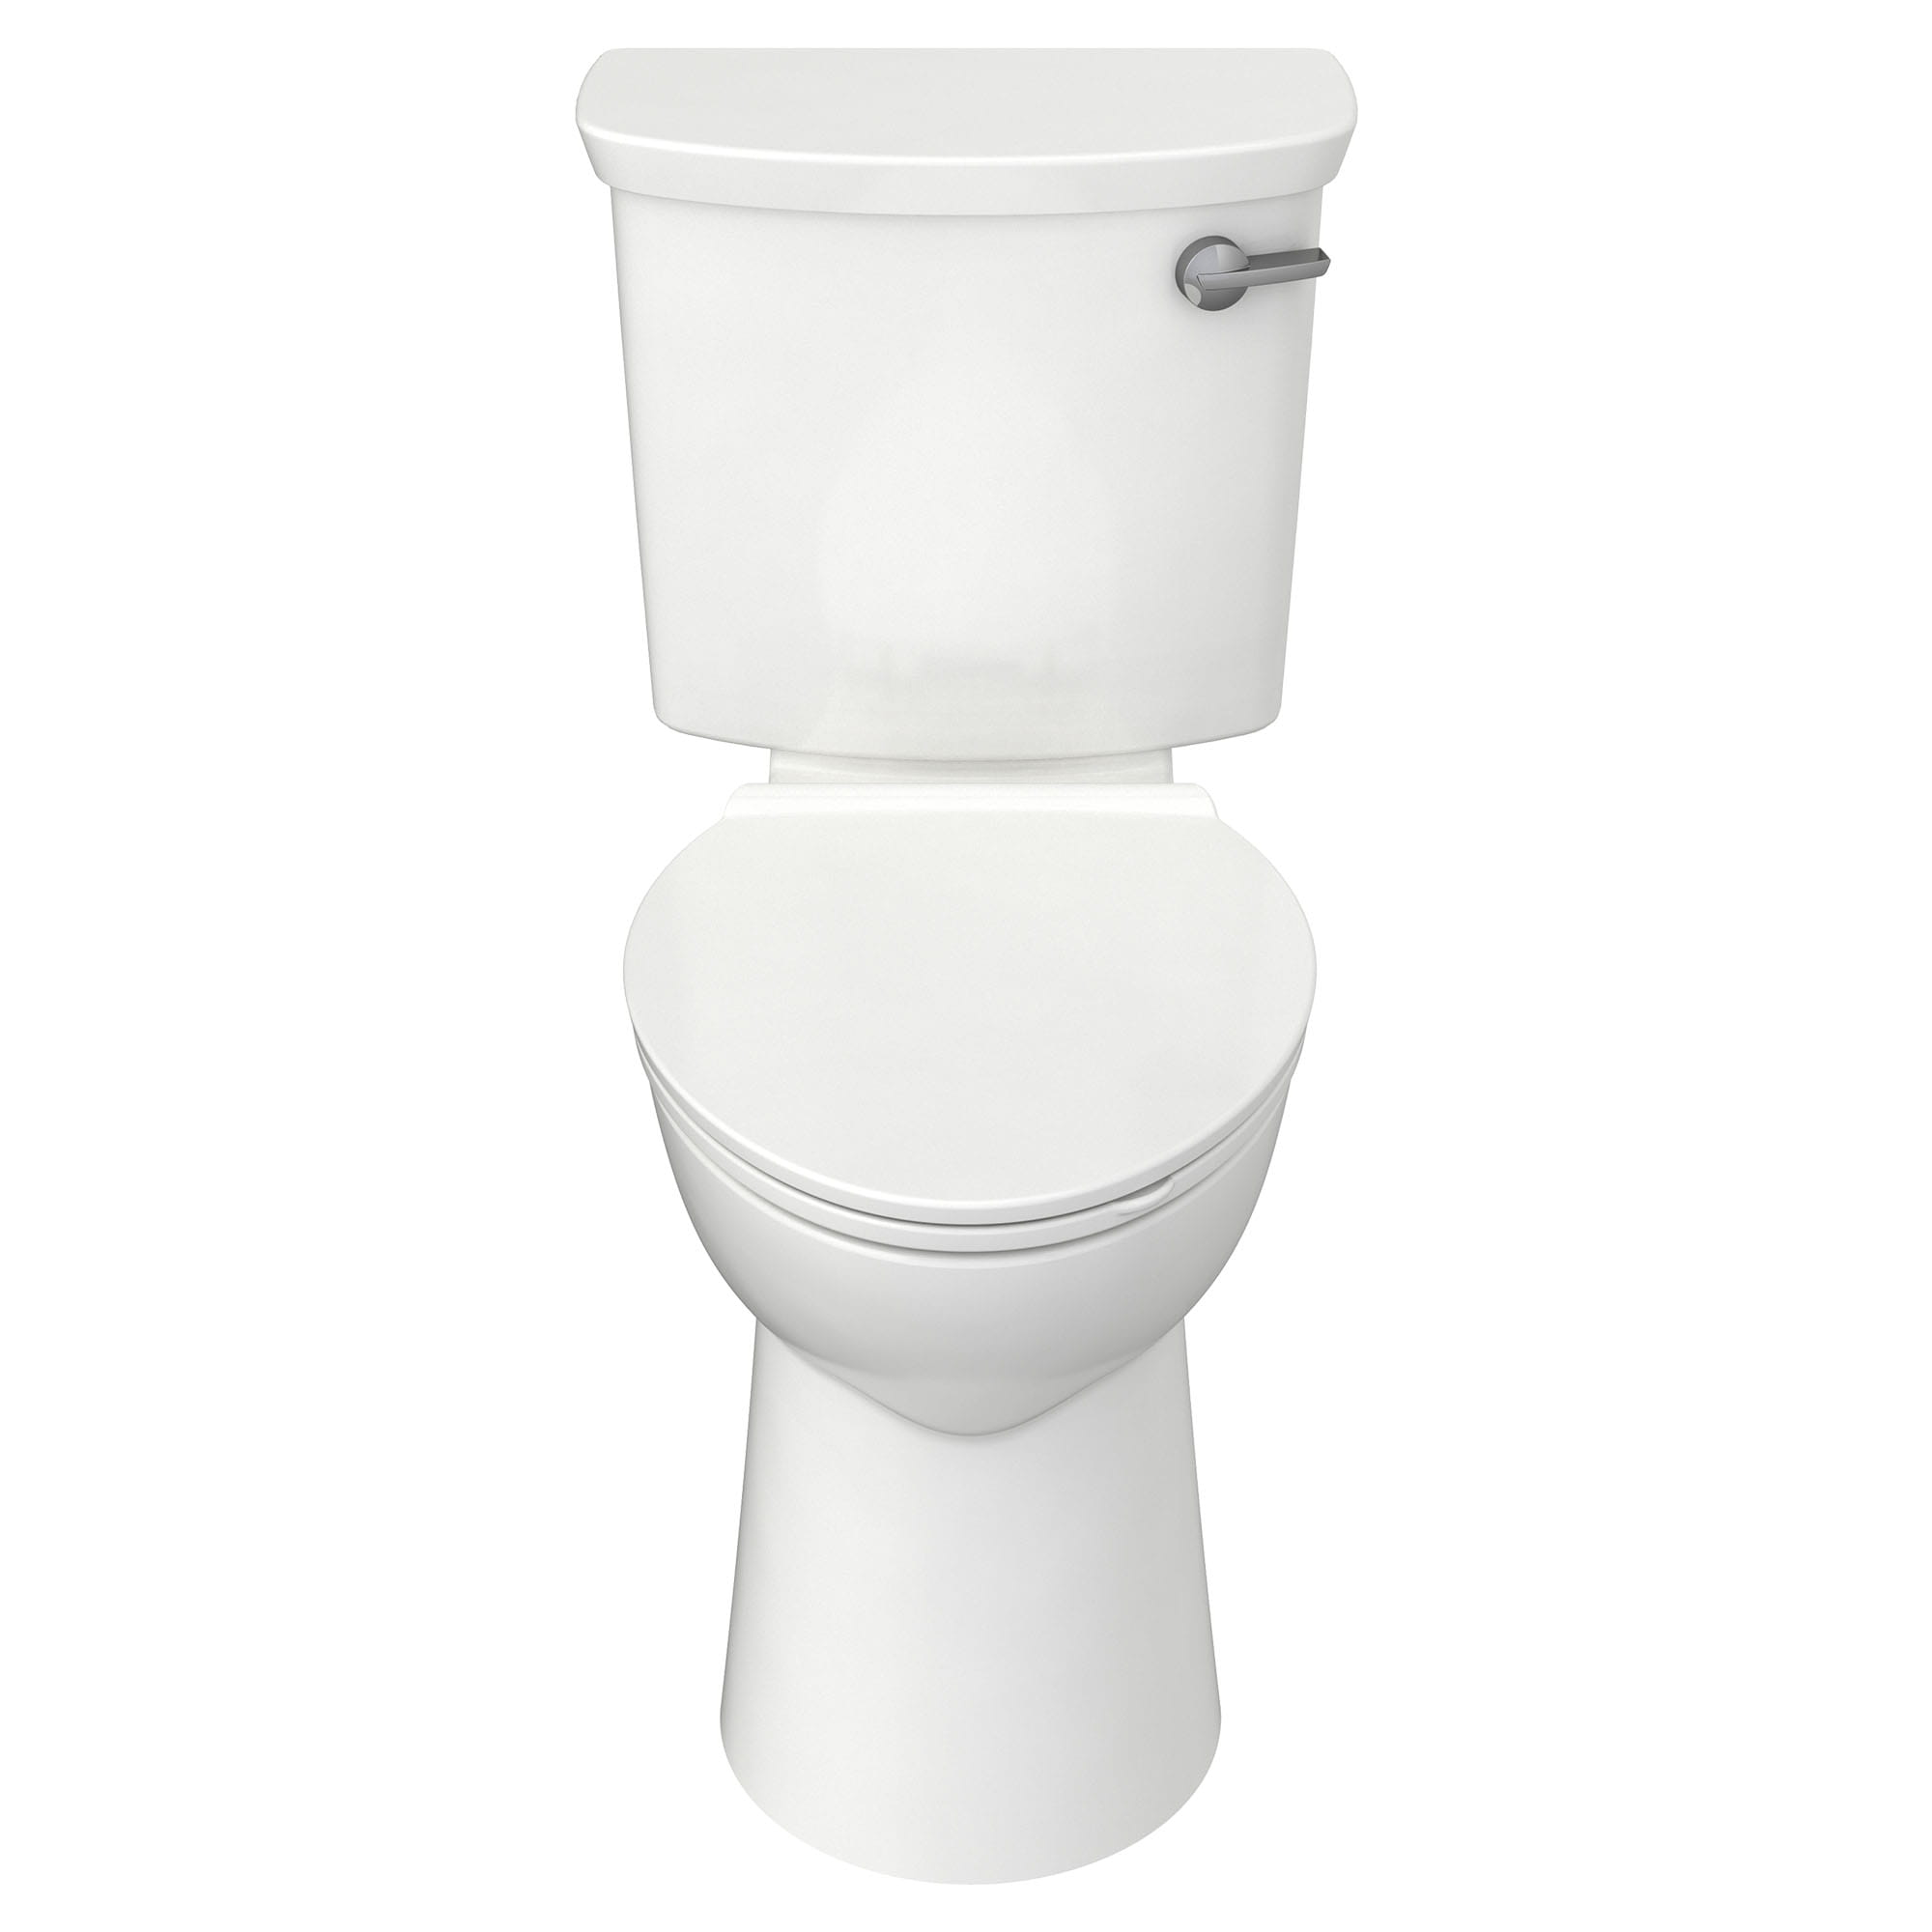 Yorkville™ VorMax® -Toilette allongée deux pièces à hauteur de chaise, 1,28 gpc/4,8 lpc, levier de déclenchement à droite, sortie arrière, avec EverClean®